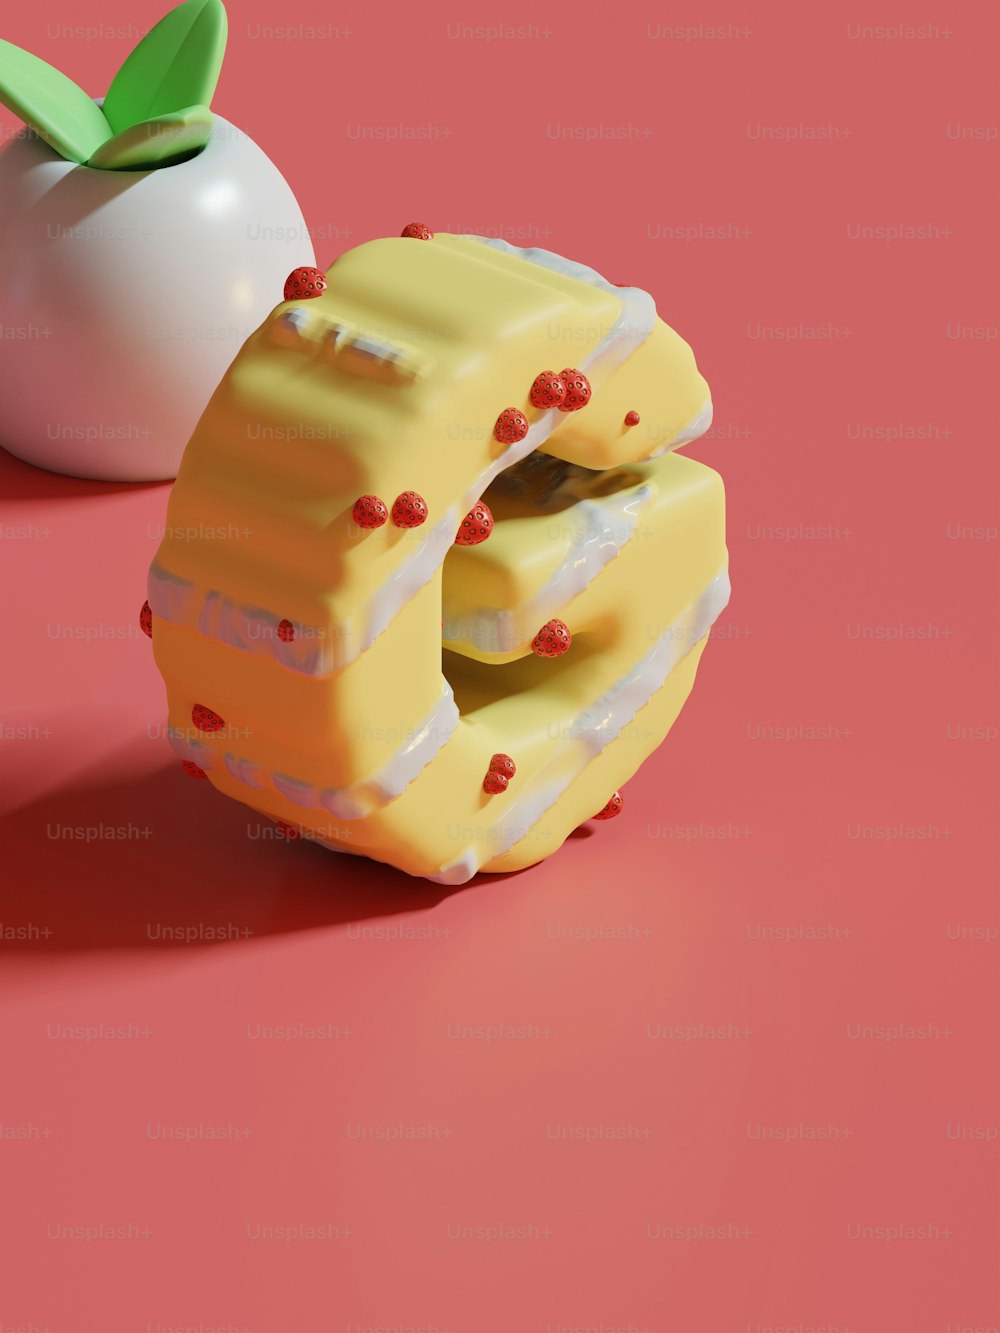 un morceau de gâteau à côté d’une pomme sur une surface rose